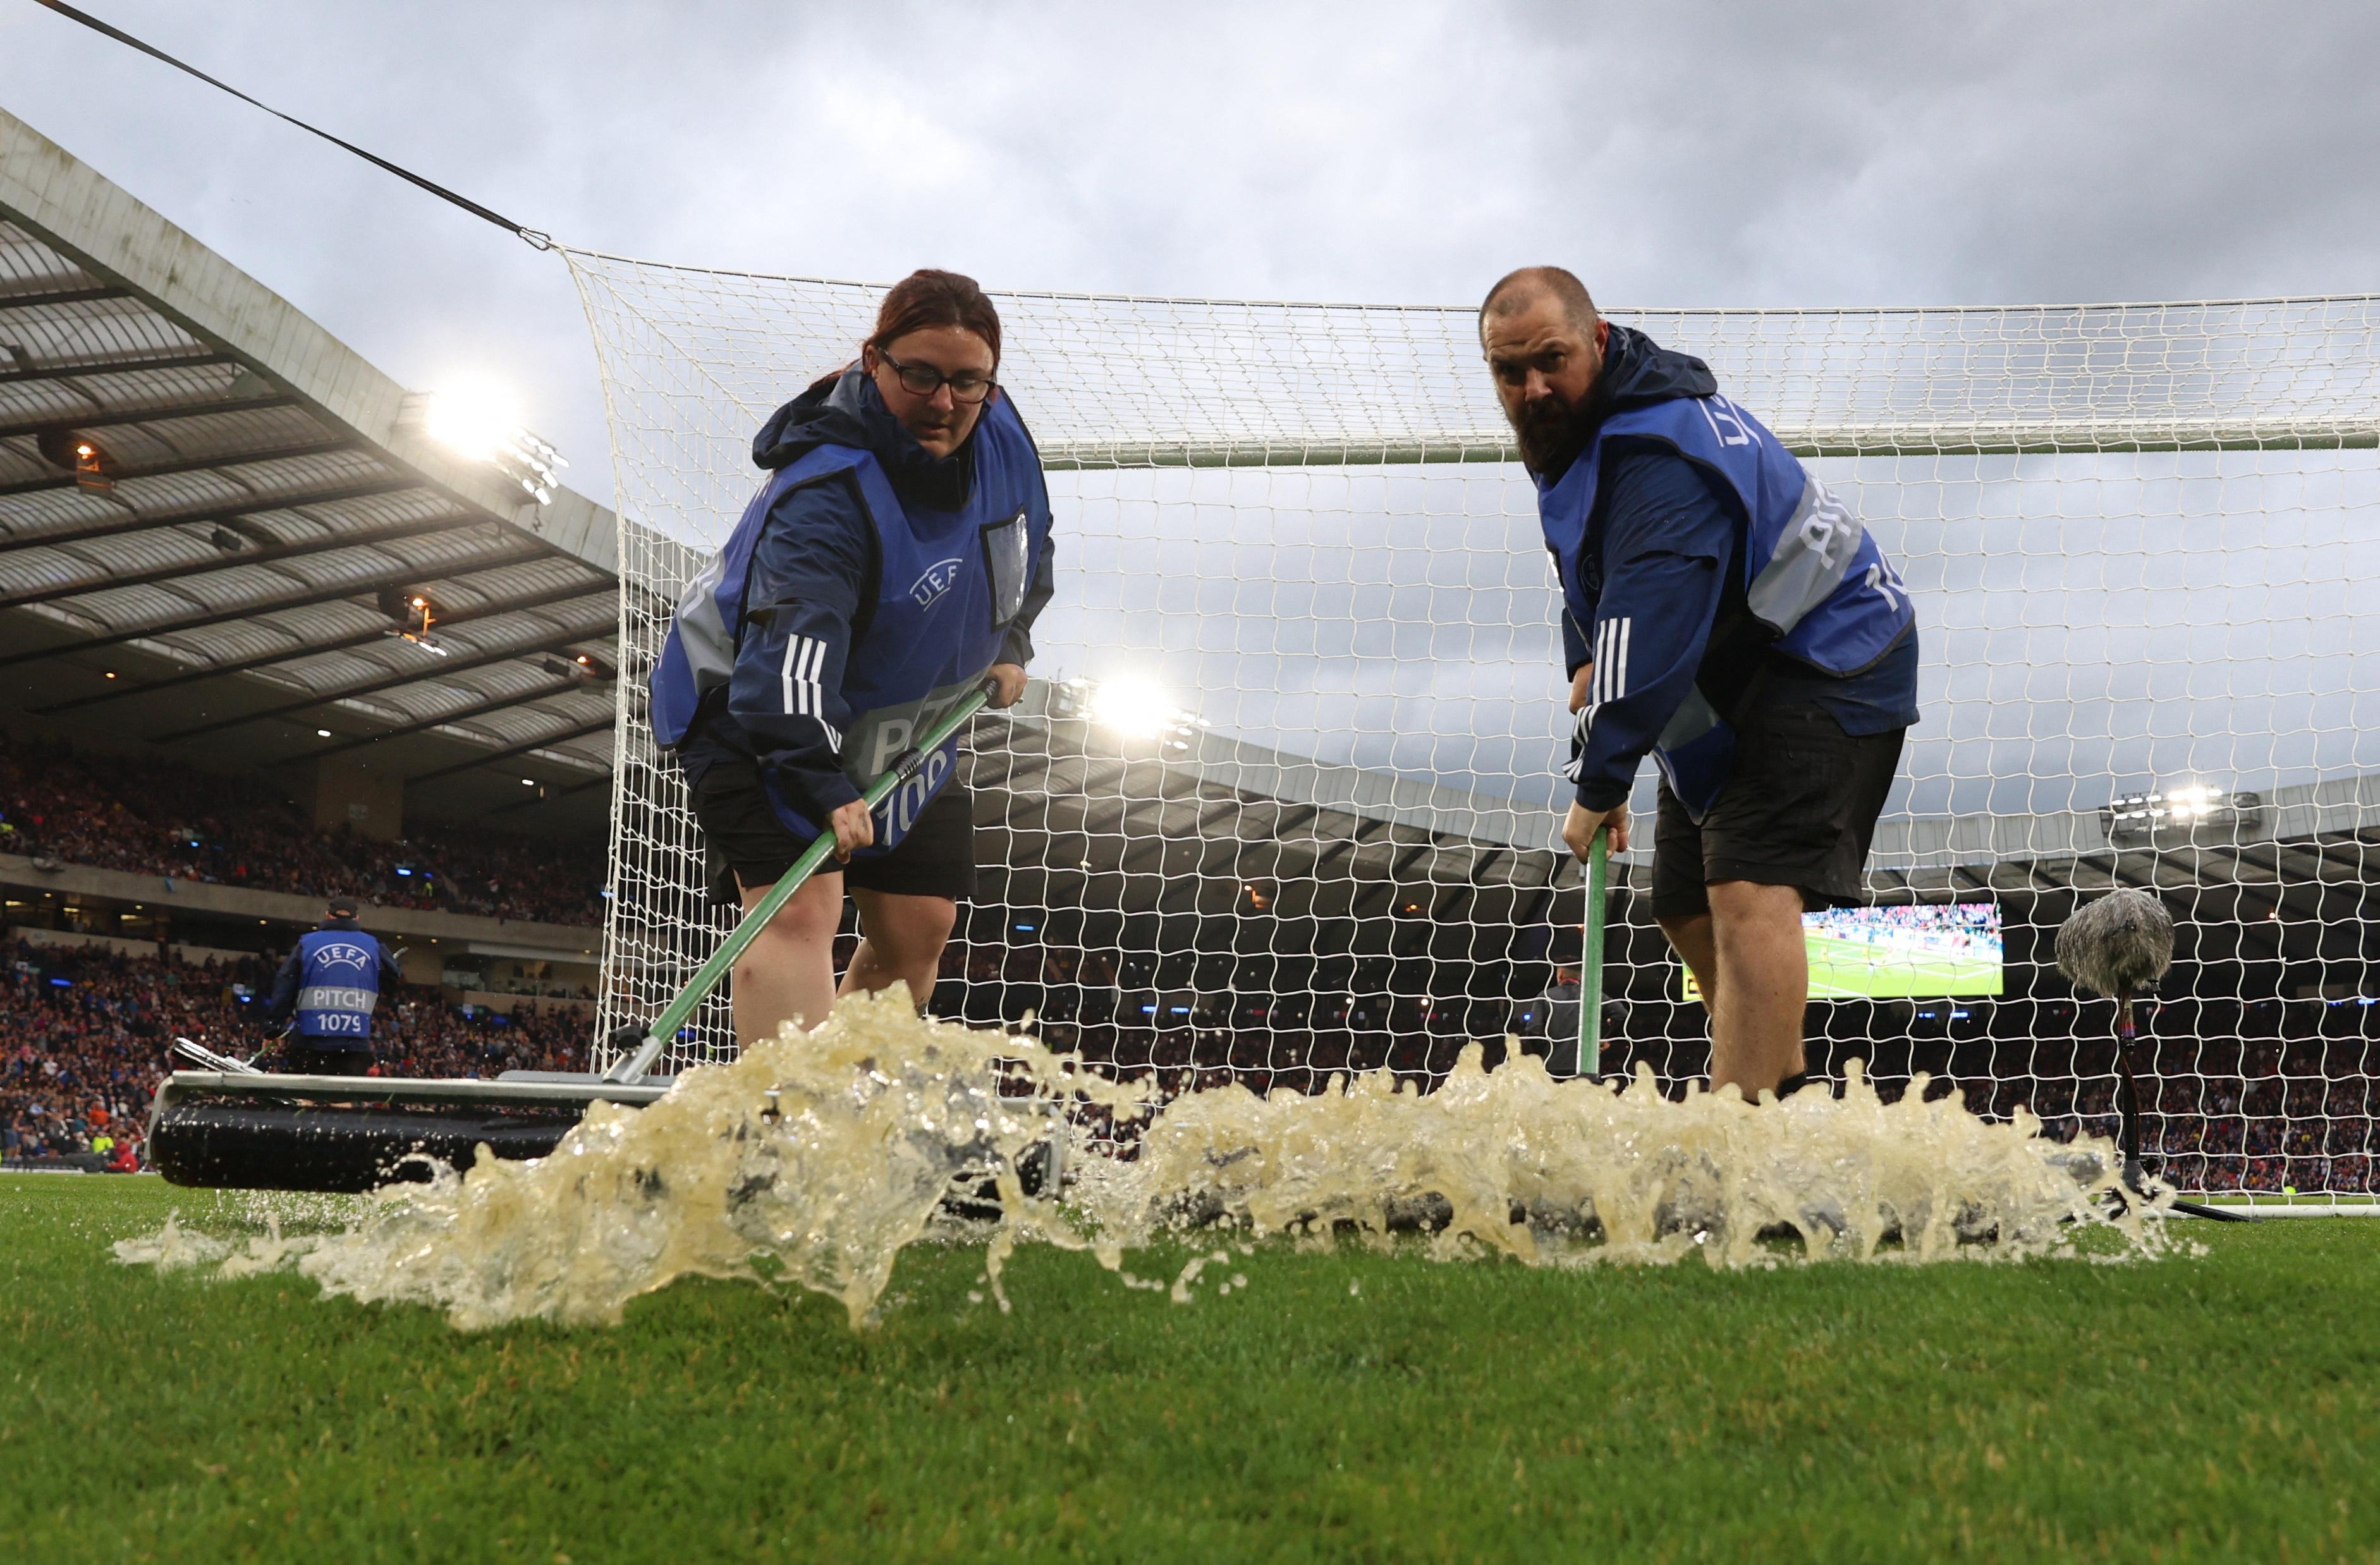 إزالة مياه الأمطار من أرض ملعب هامبدن بارك، غلاسكو، اسكتلندا، أثناء توقف المباراة بسبب سوء الأحوال الجوية خلال تصفيات أمم أوروبا في 20 يونيو/حزيران 2023